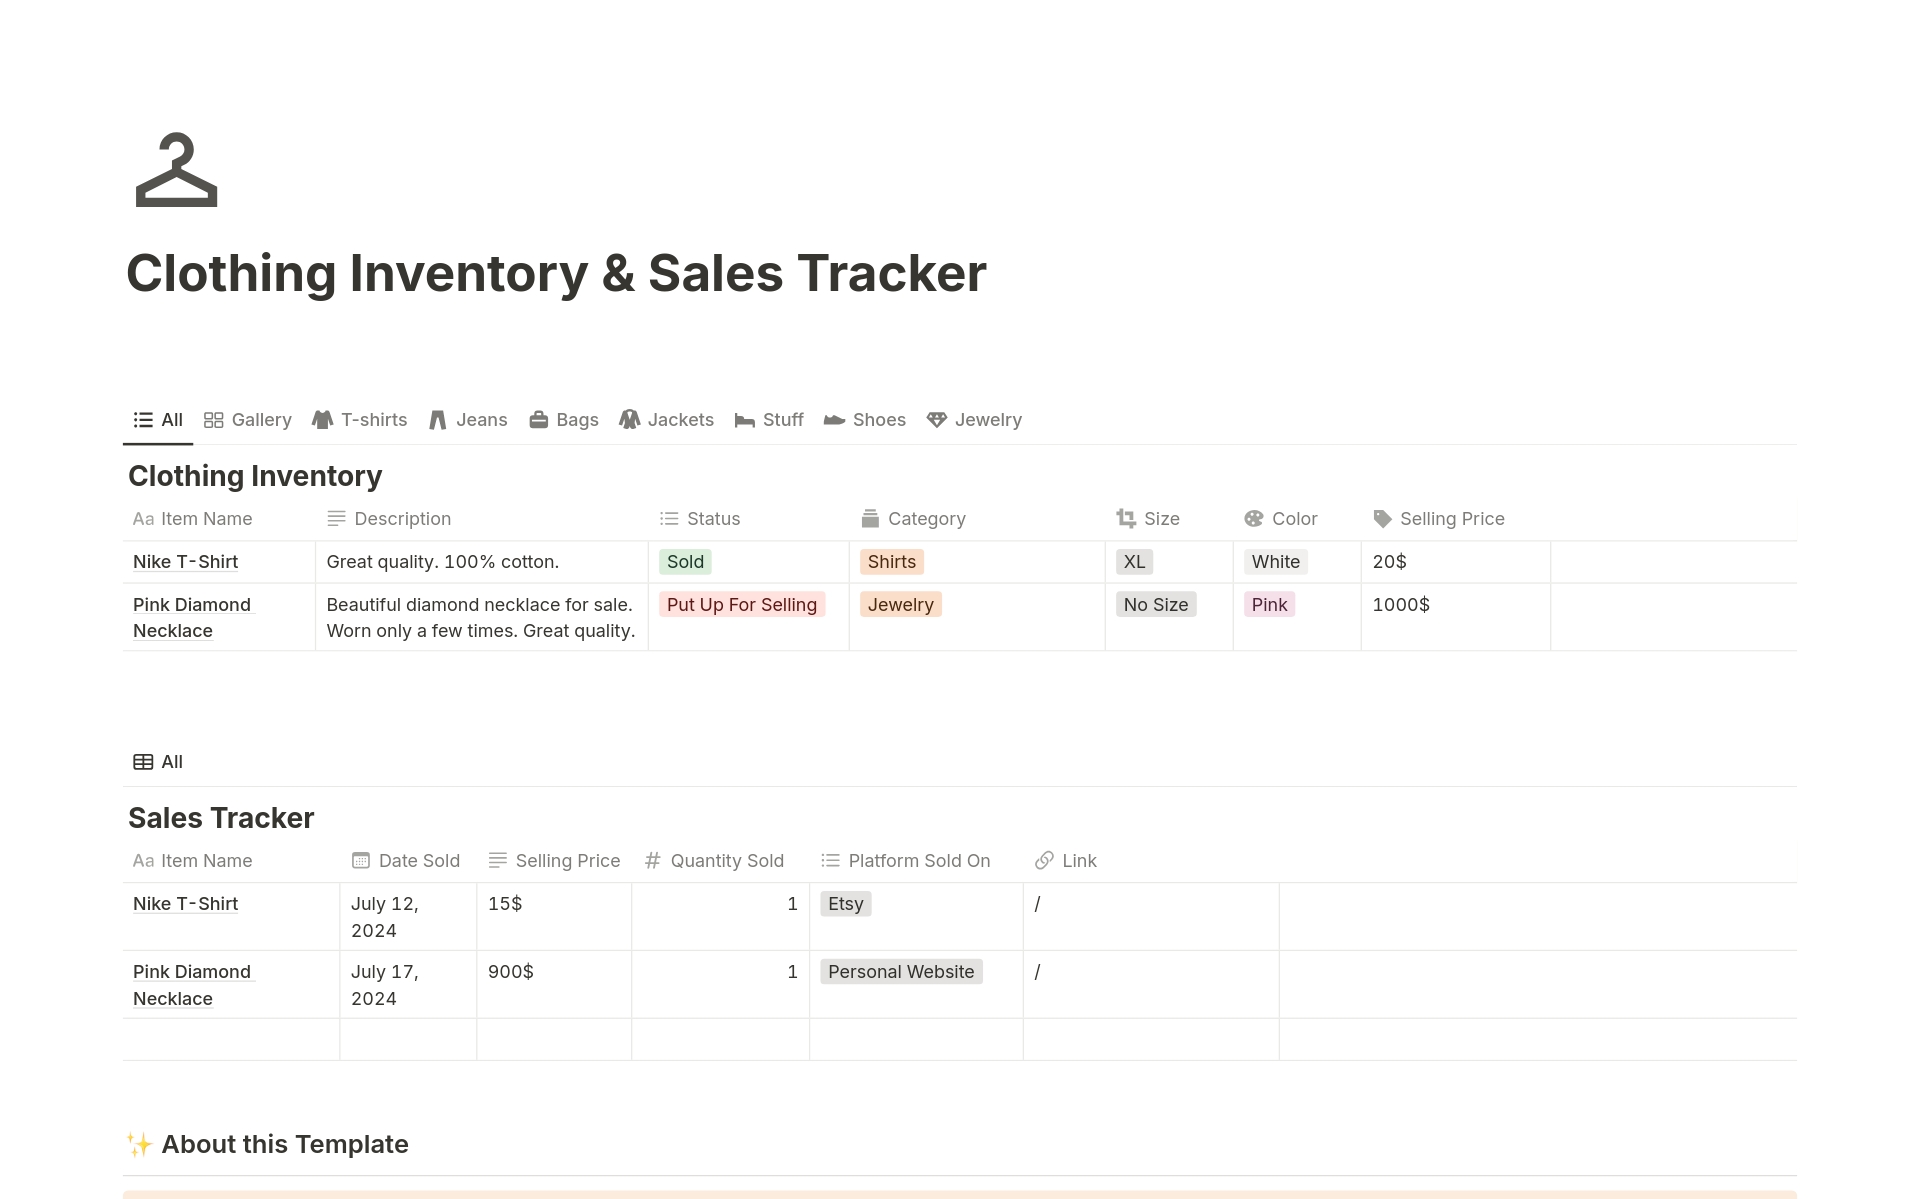 Vista previa de plantilla para Clothing Inventory & Sales Tracker